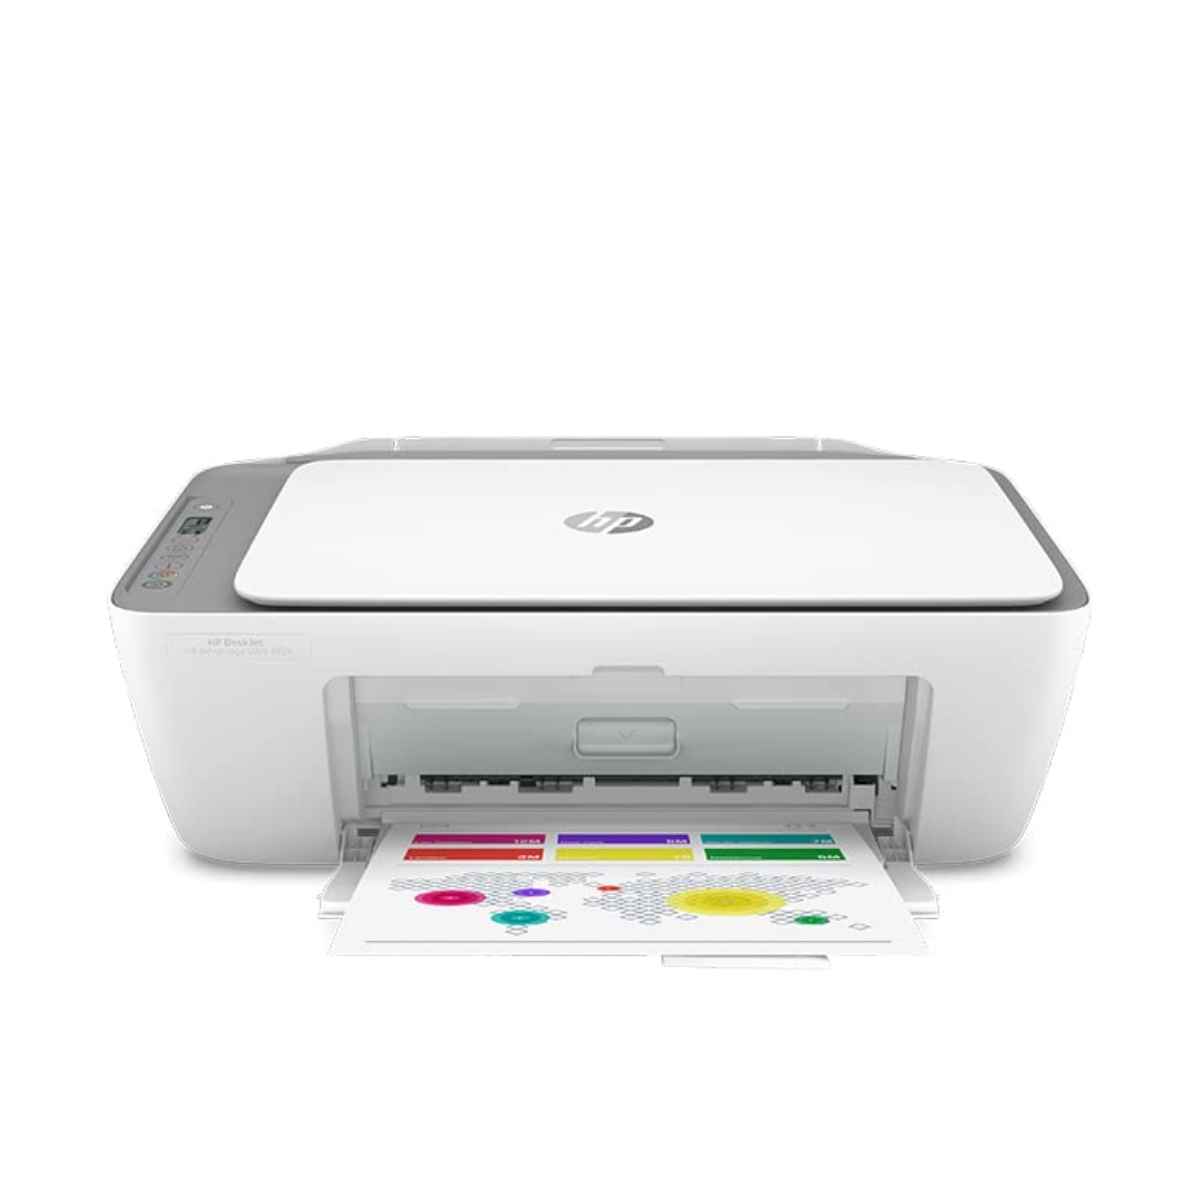 എച്പി DeskJet Ink Advantage Ultra 4826 All-in-One Printer 